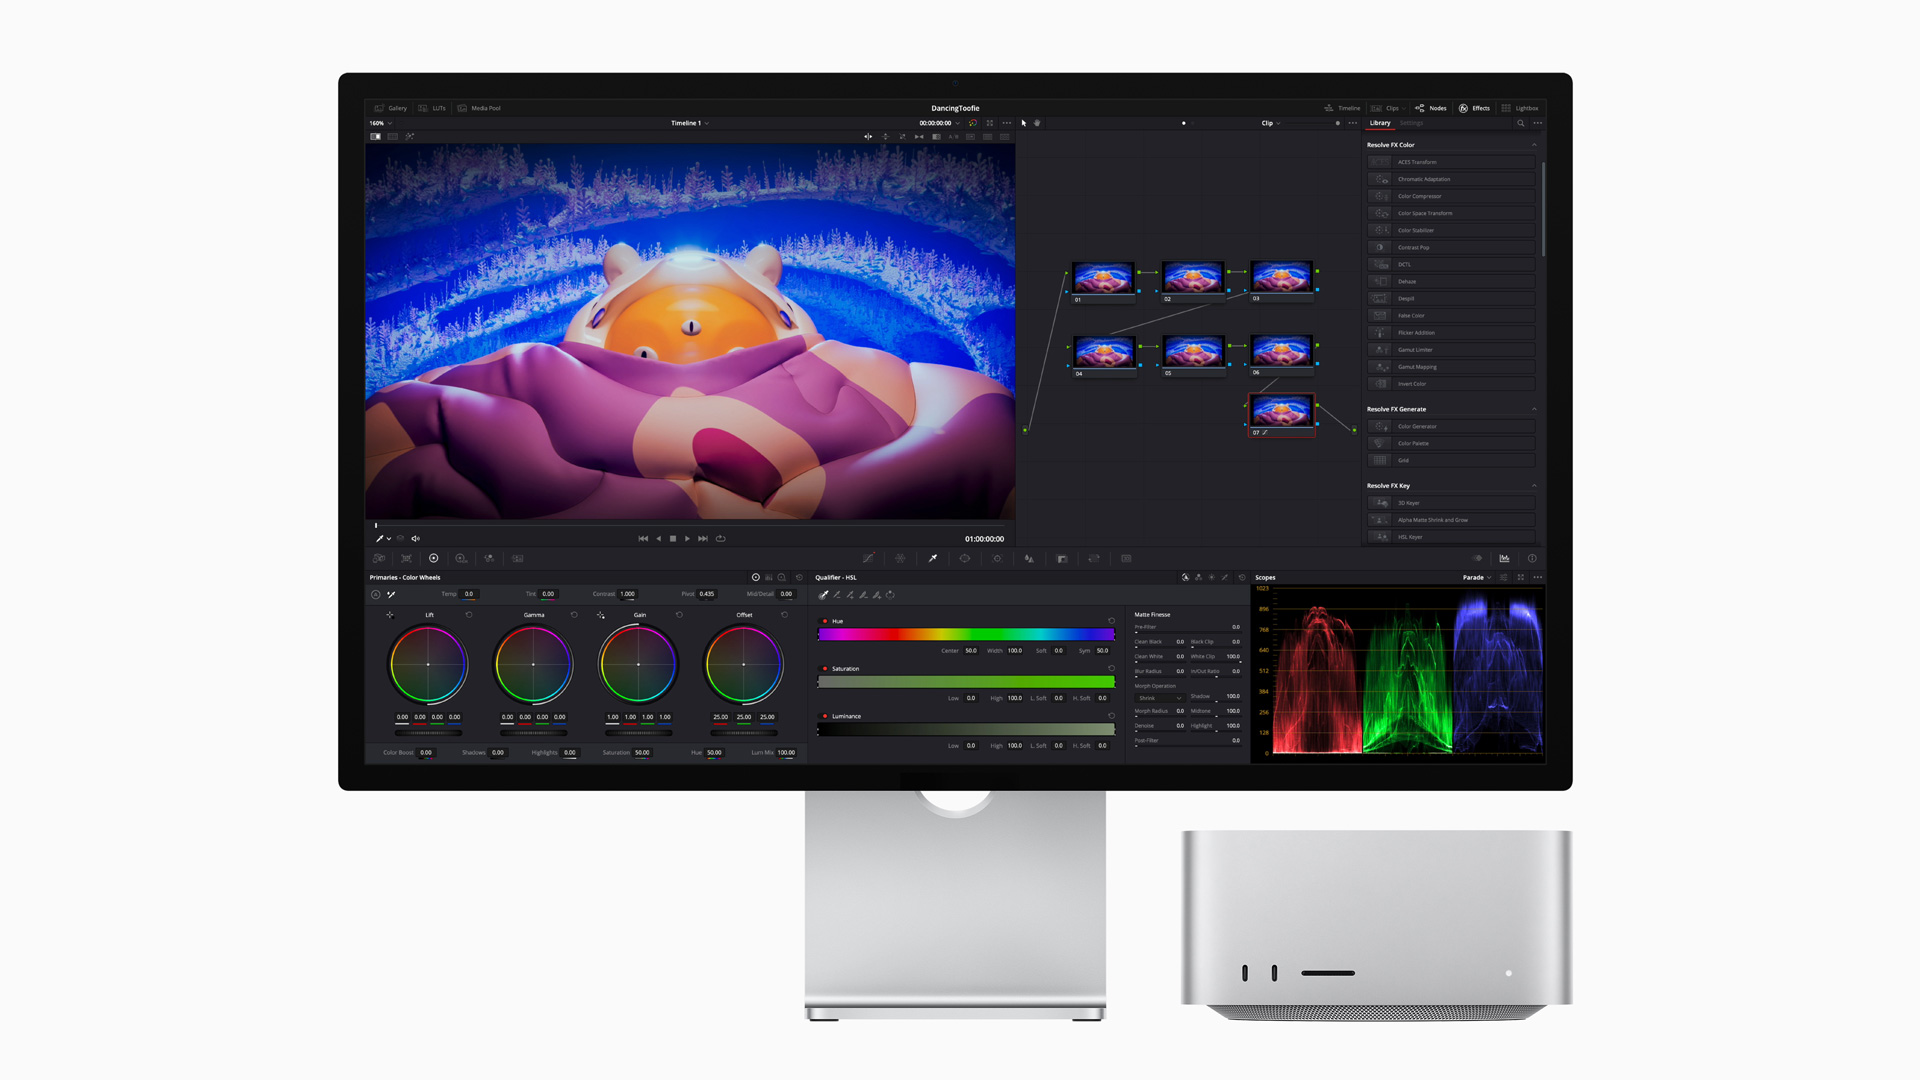 Mac Studio M2 Ultra